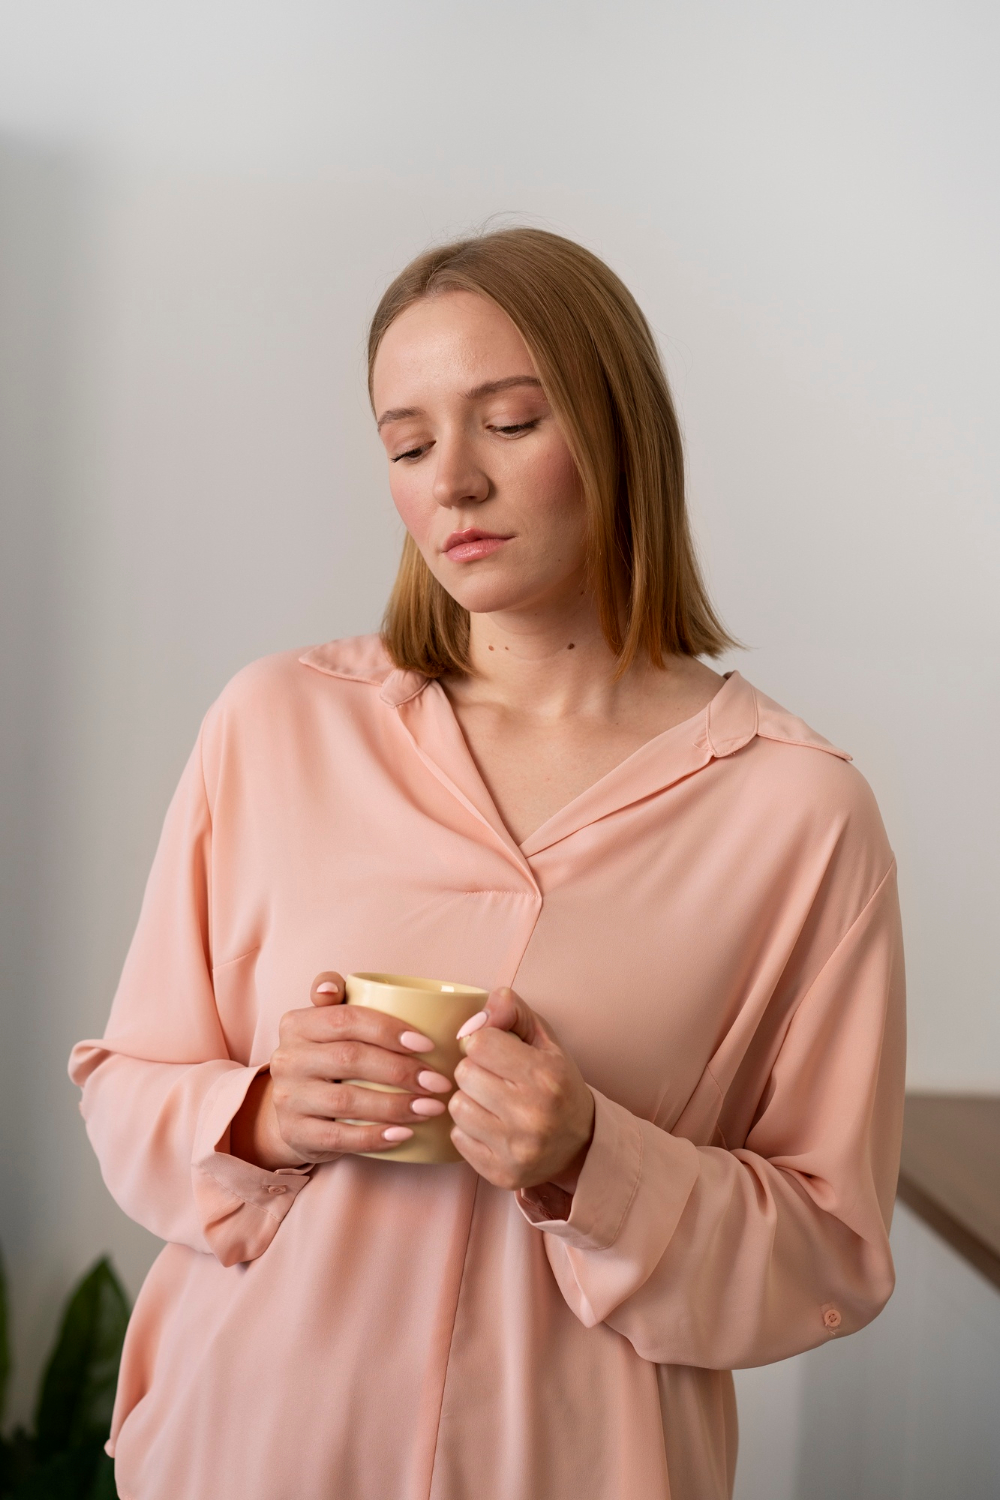 أعراض خمول الغدة الدرقية عند النساء